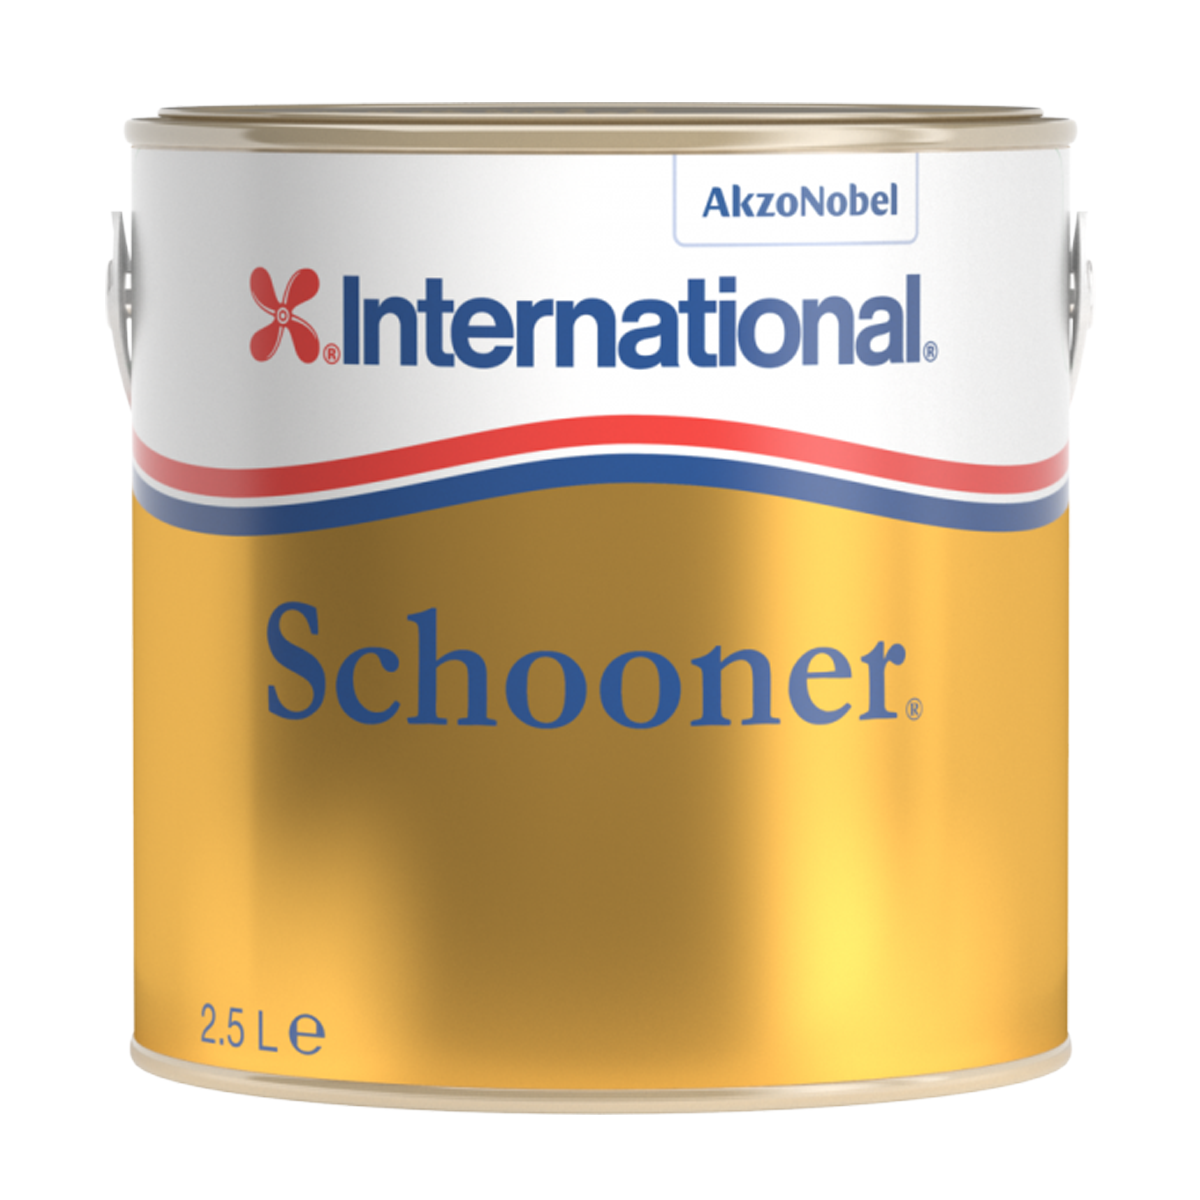 Schooner